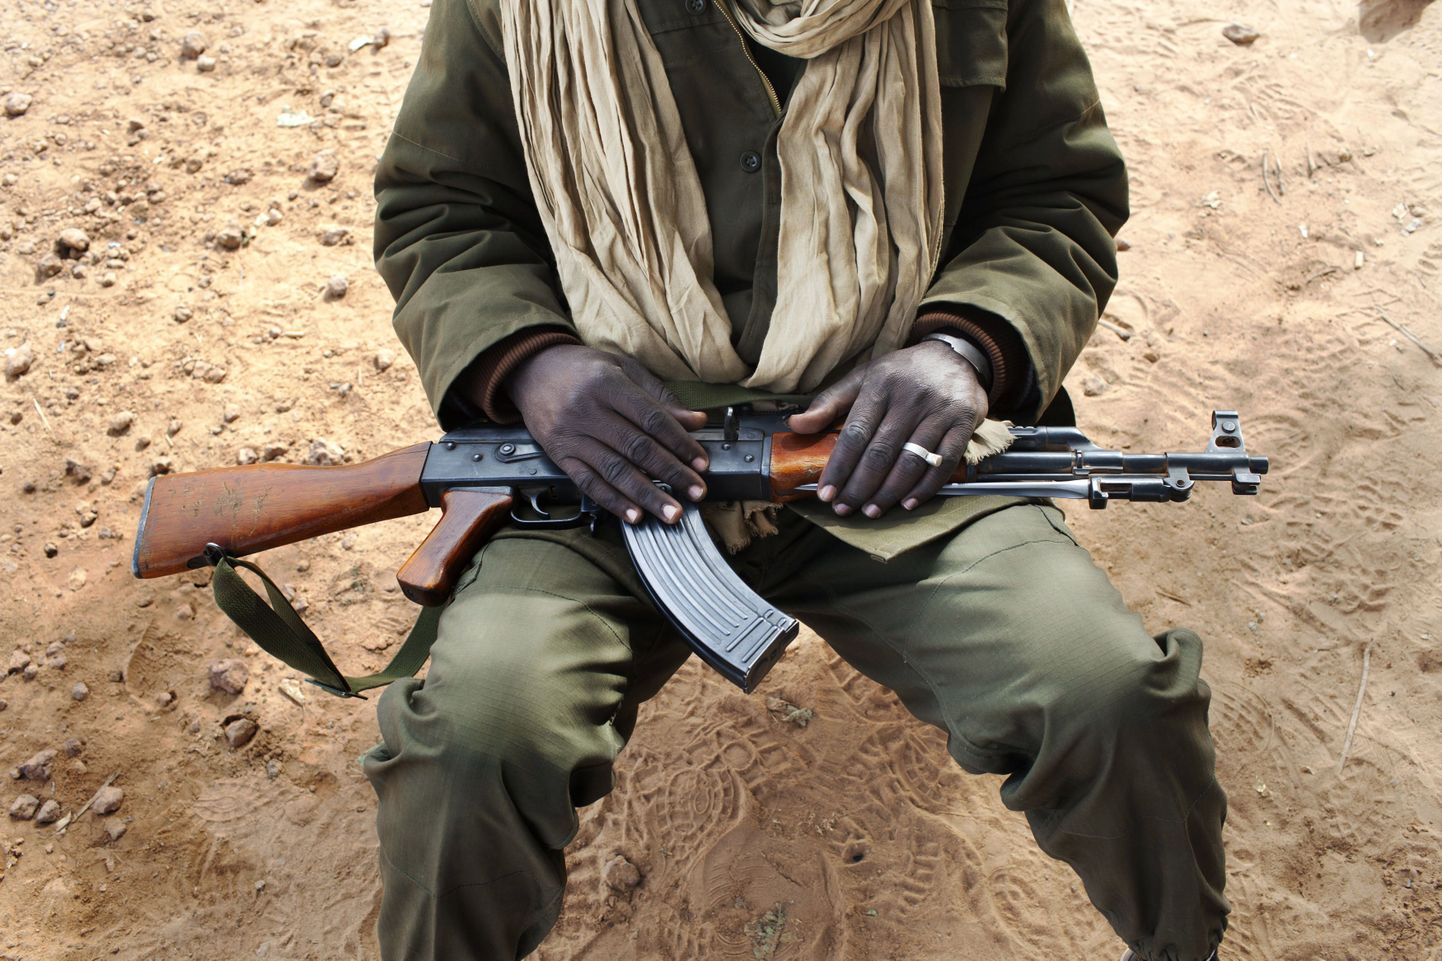 Mali sõdur hoiab käes Kalašnikovi automaati AK-47.